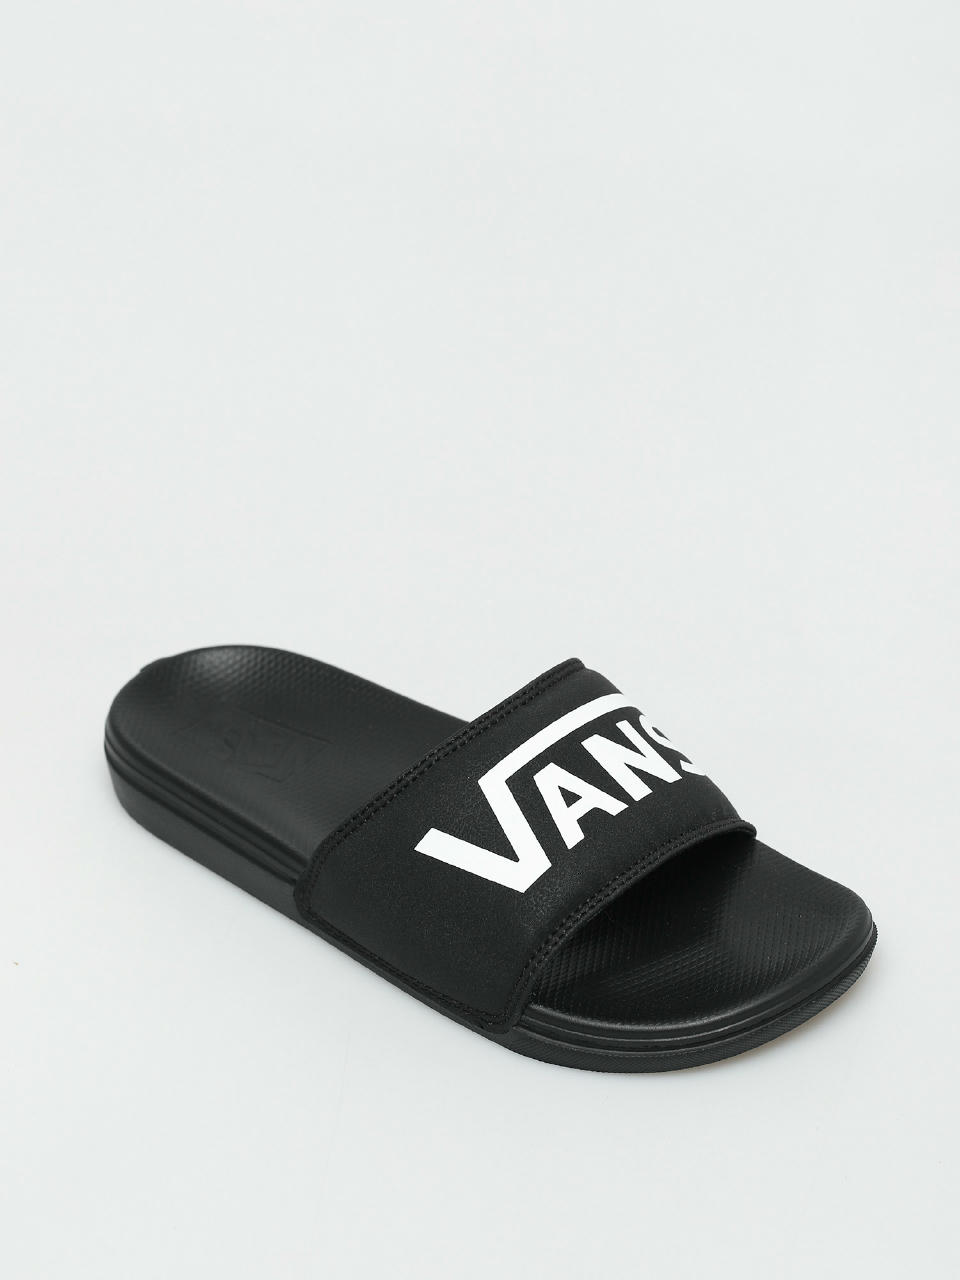 Vans Buty La Costa Slide On Flip flops (vans/black)